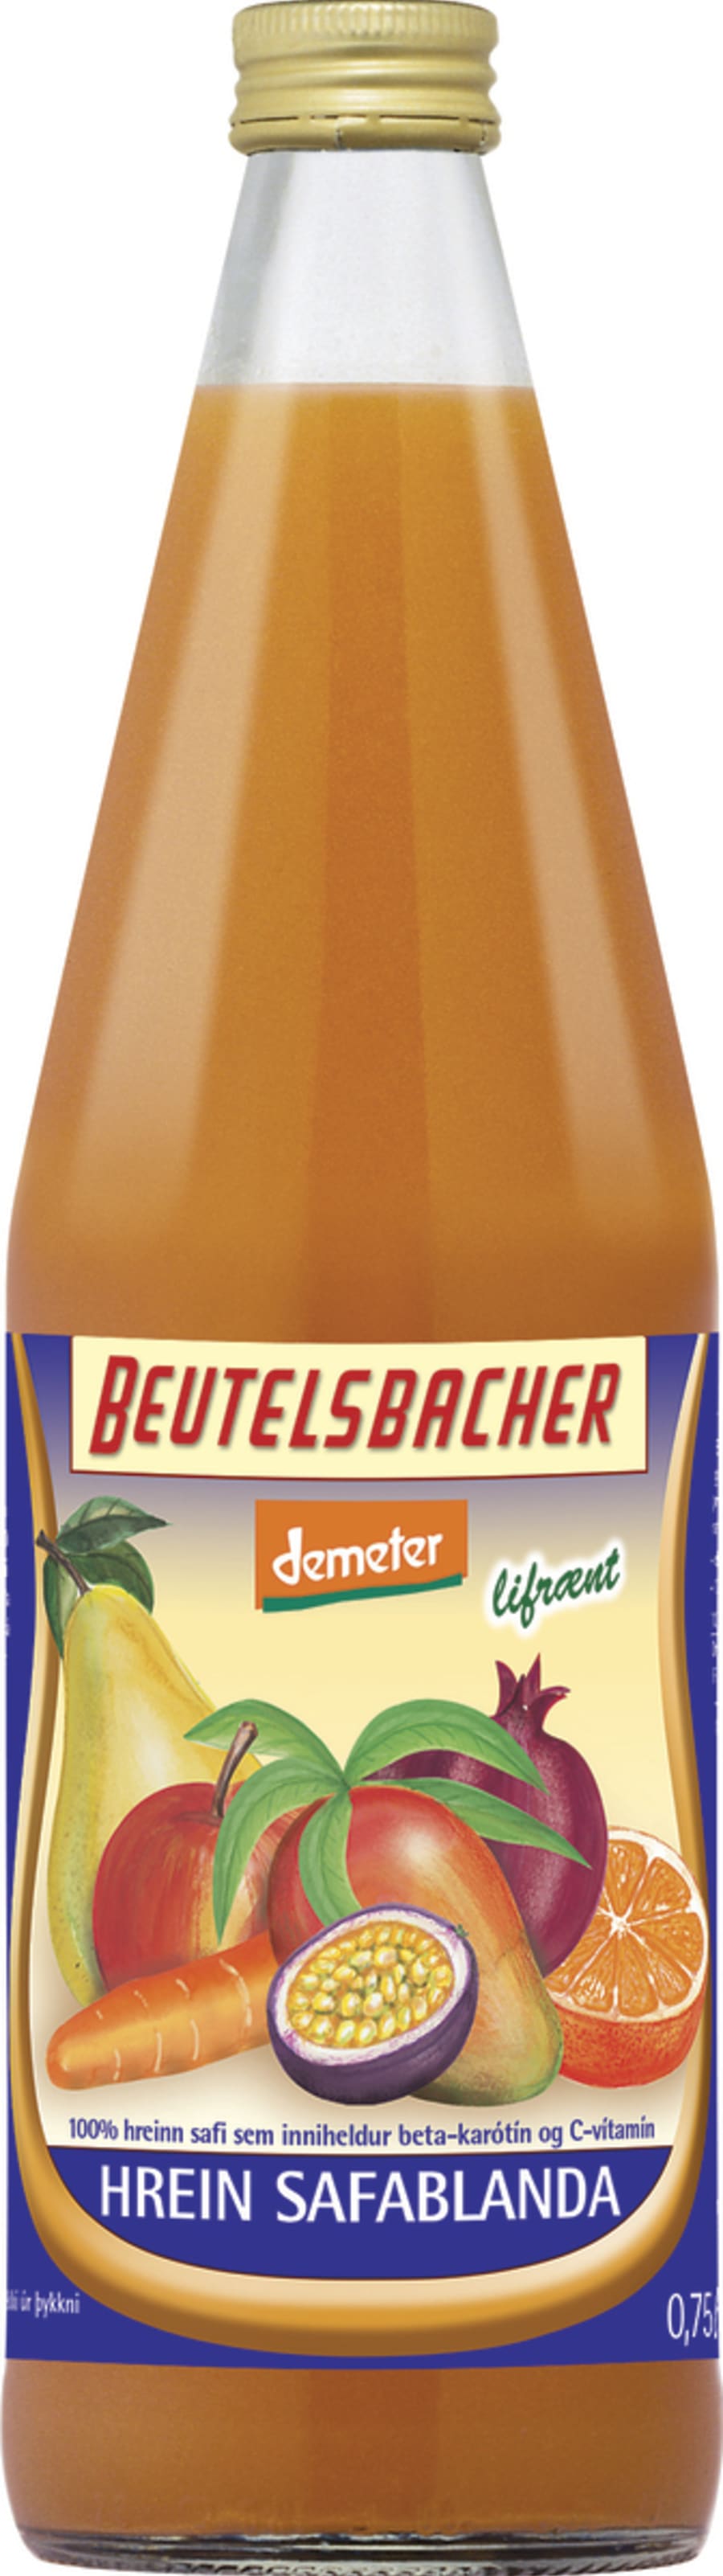 Beutelsbacher Hrein Safablanda